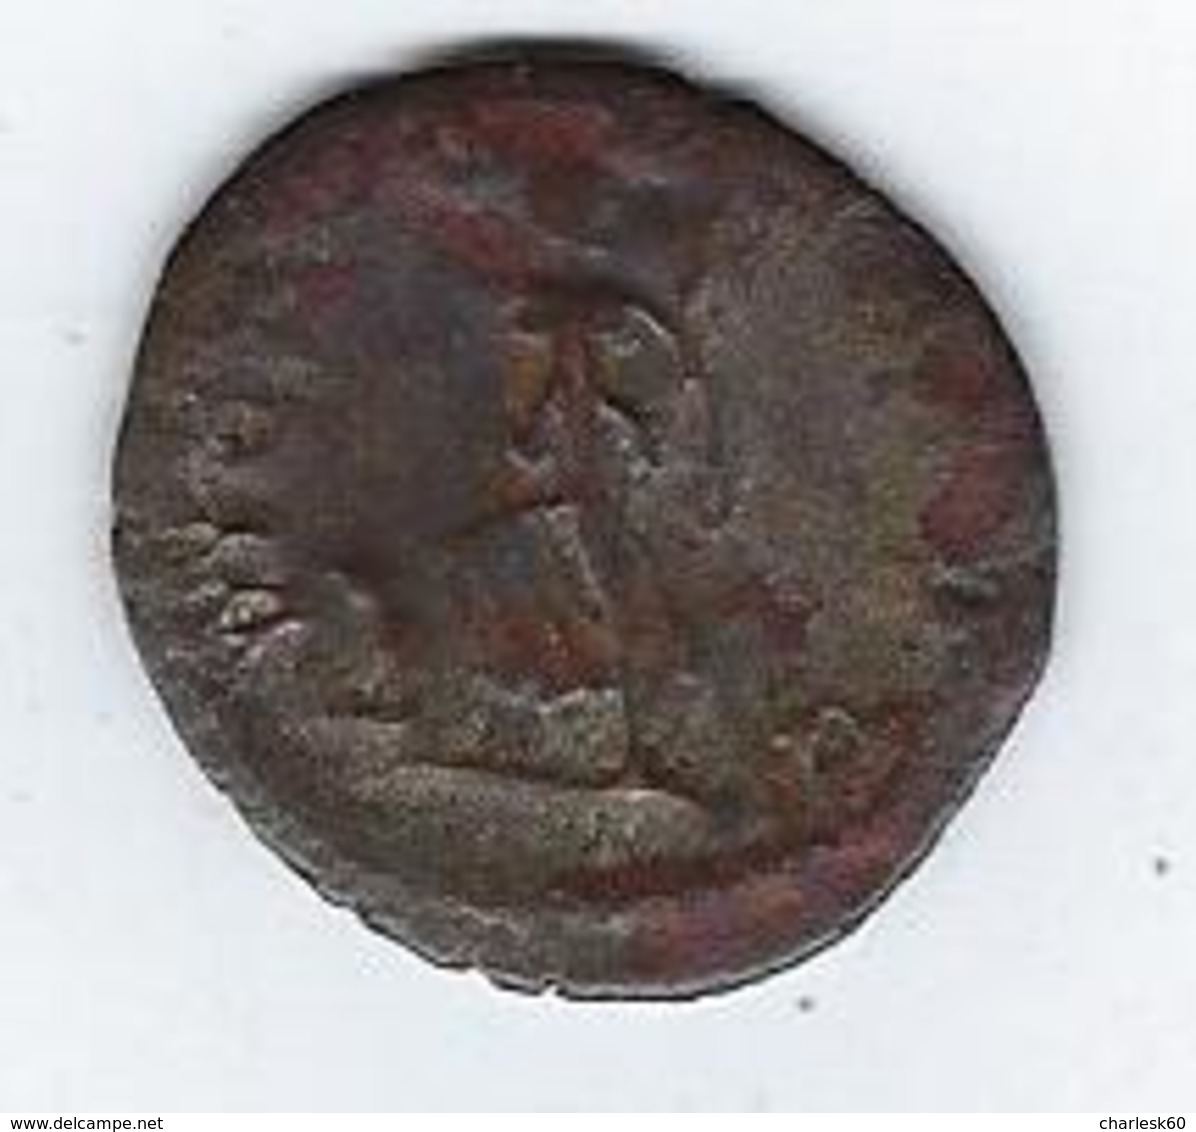 Monnaie Romaine POSTUME 260 269 Marcus Cassianus Latinius Postumus - L'Anarchie Militaire (235 à 284)